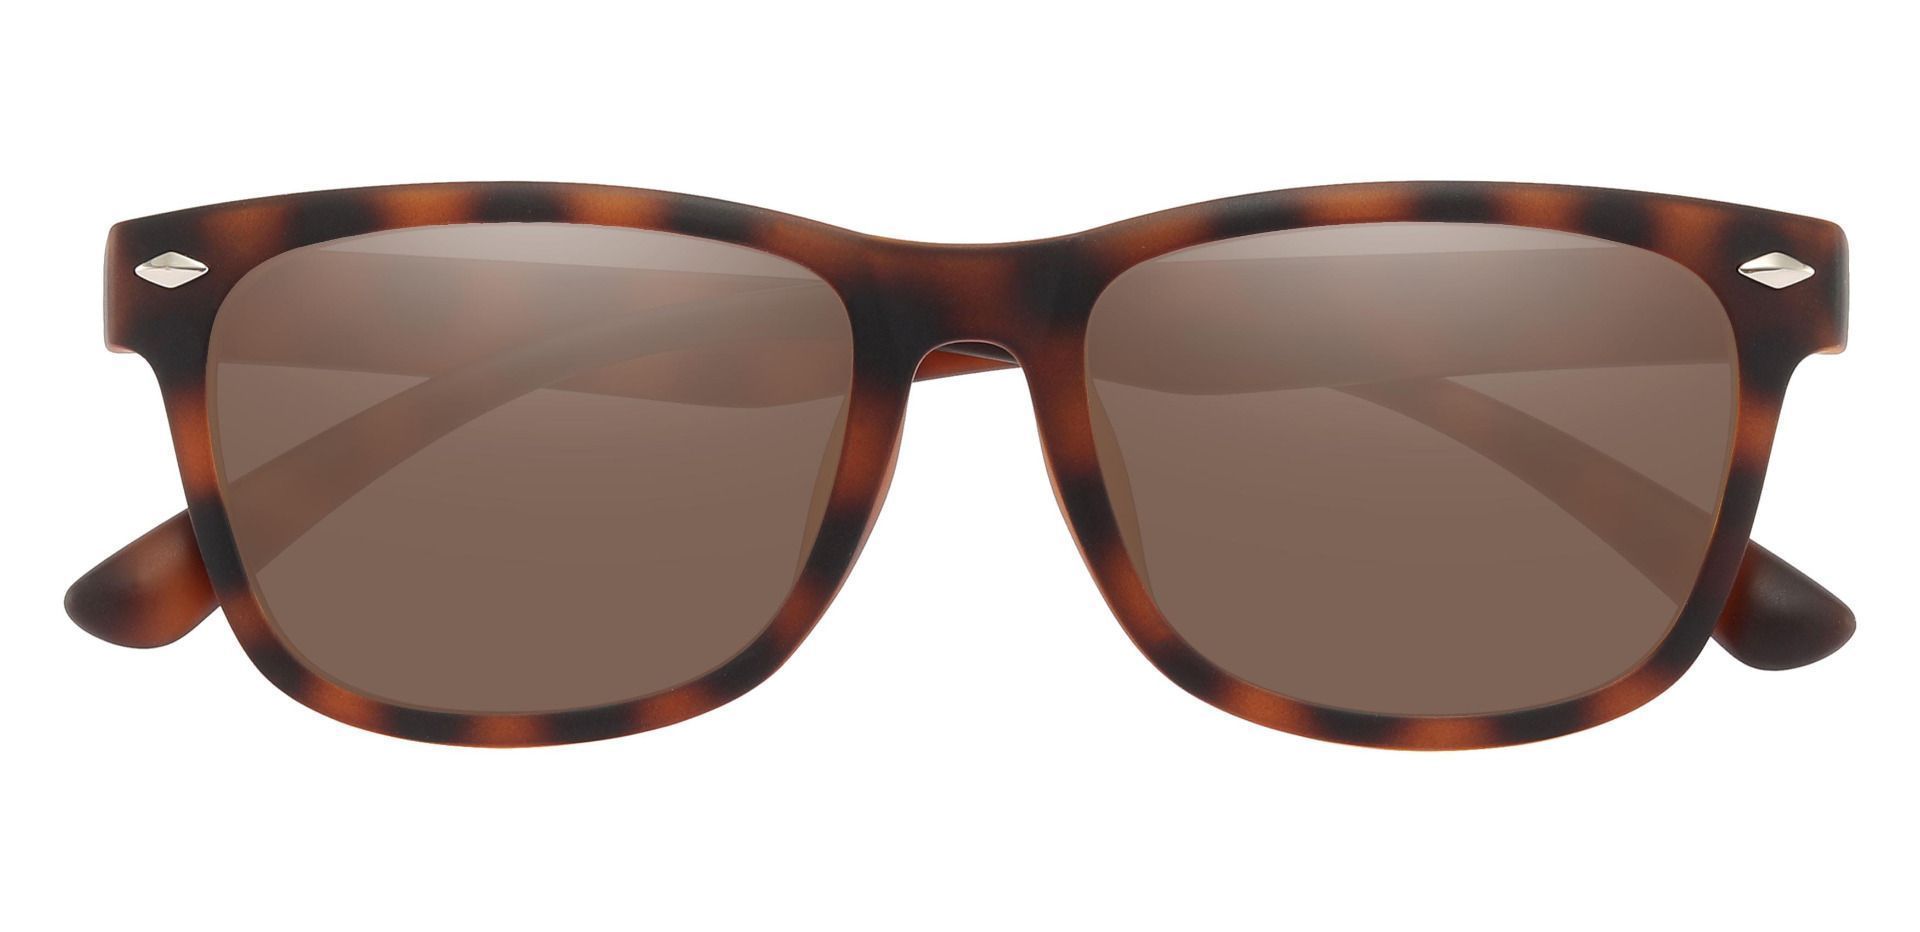 Shaler Square Reading Sunglasses - Tortoise Frame With Brown Lenses